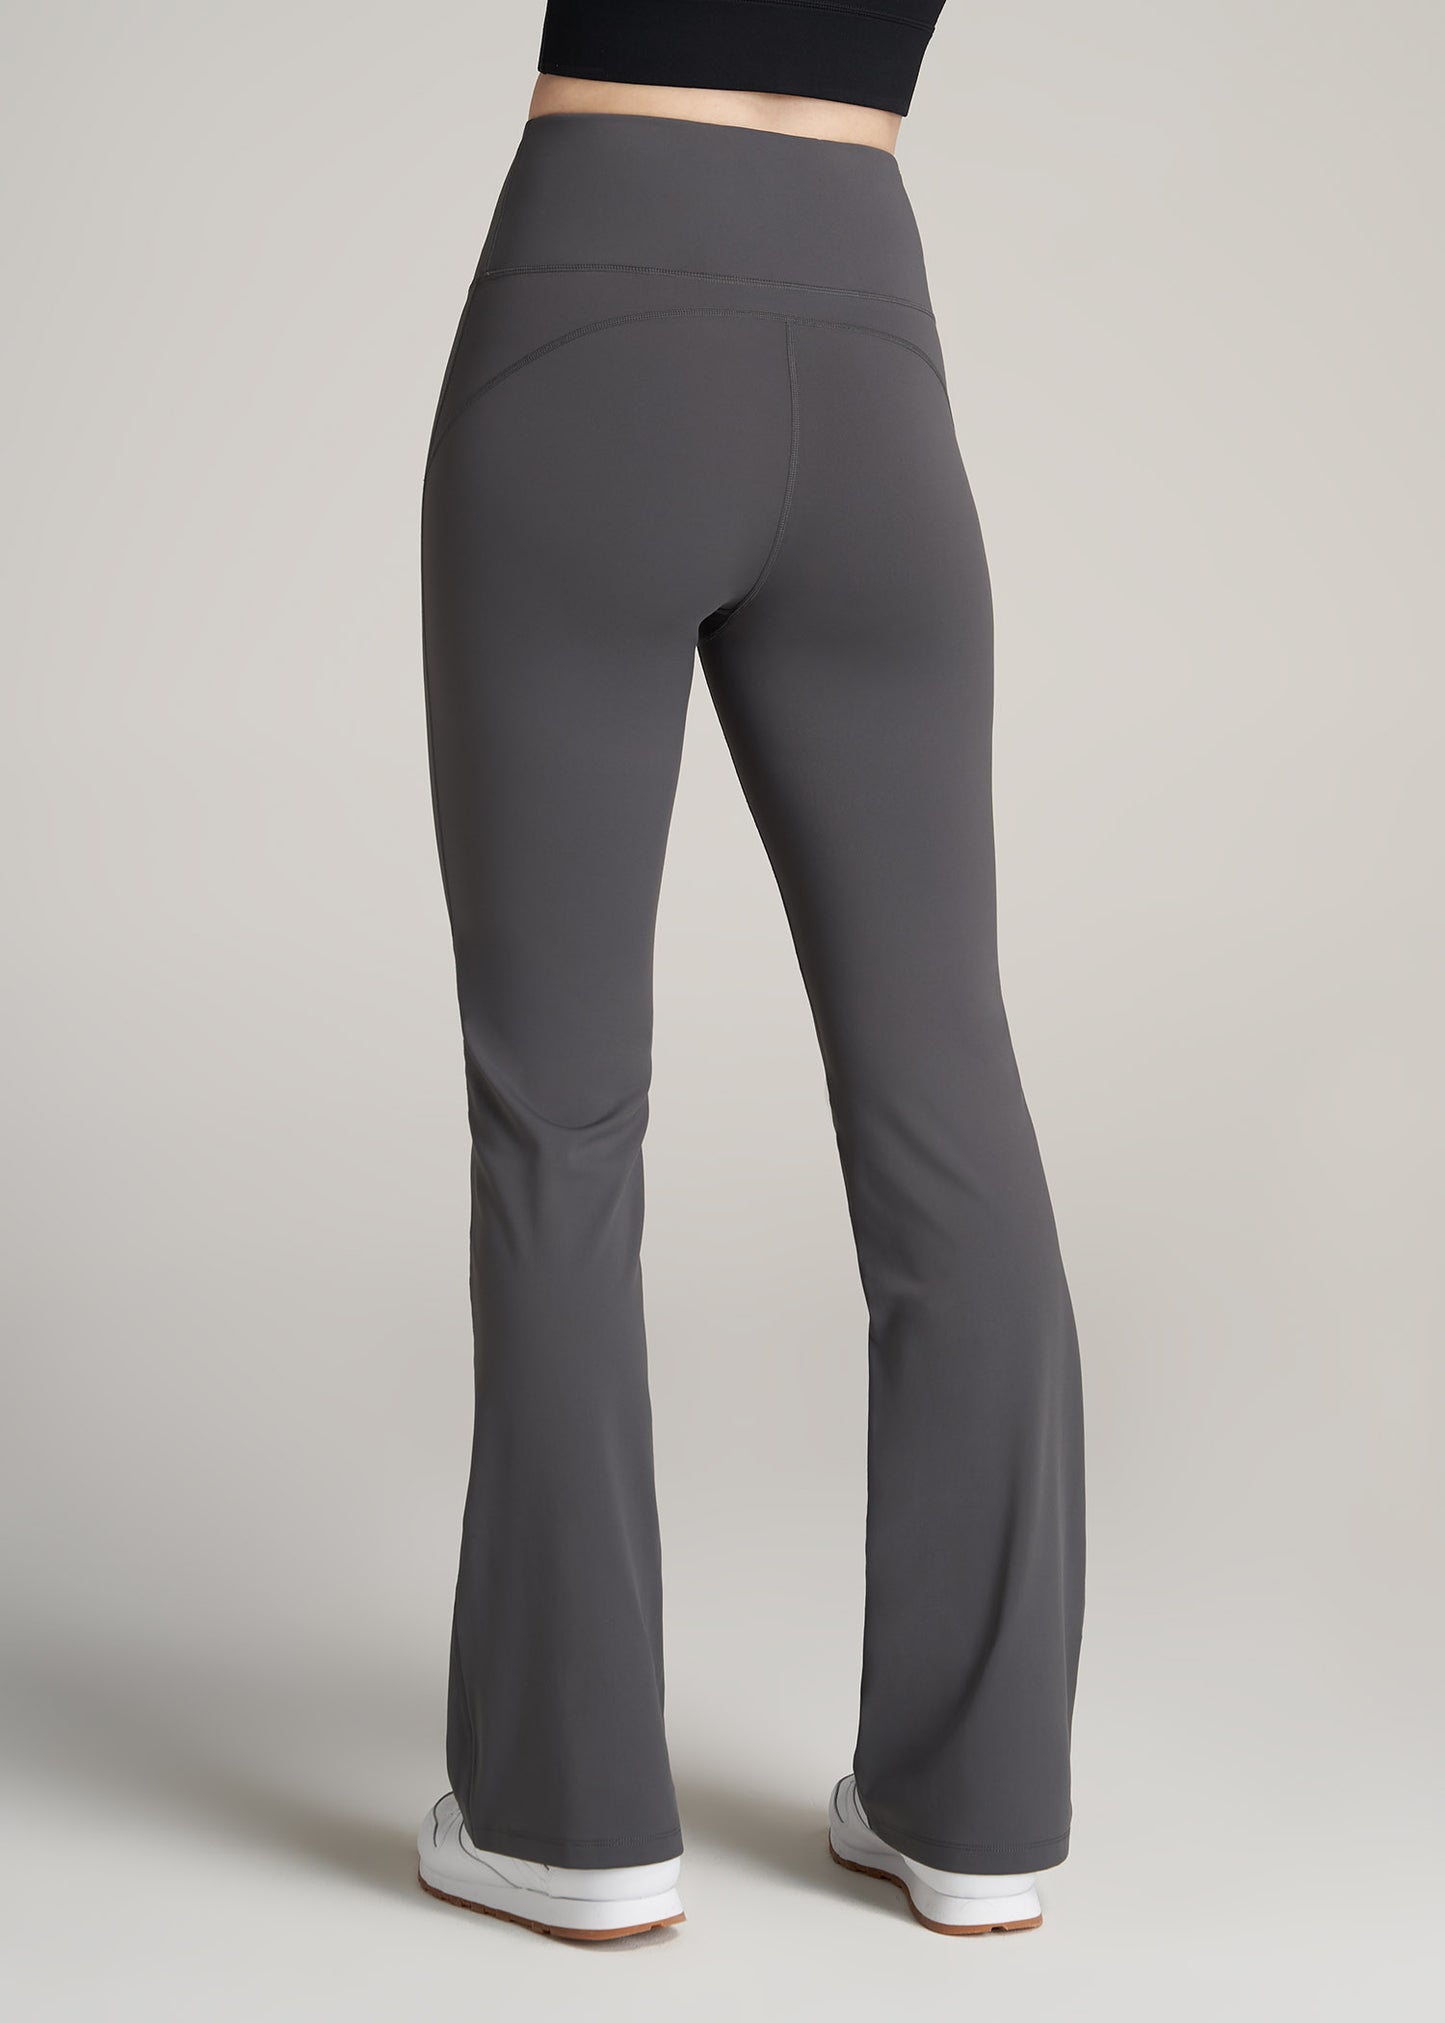 Wearever Fleece Open-Bottom Sweatpants for Tall Women Midnight